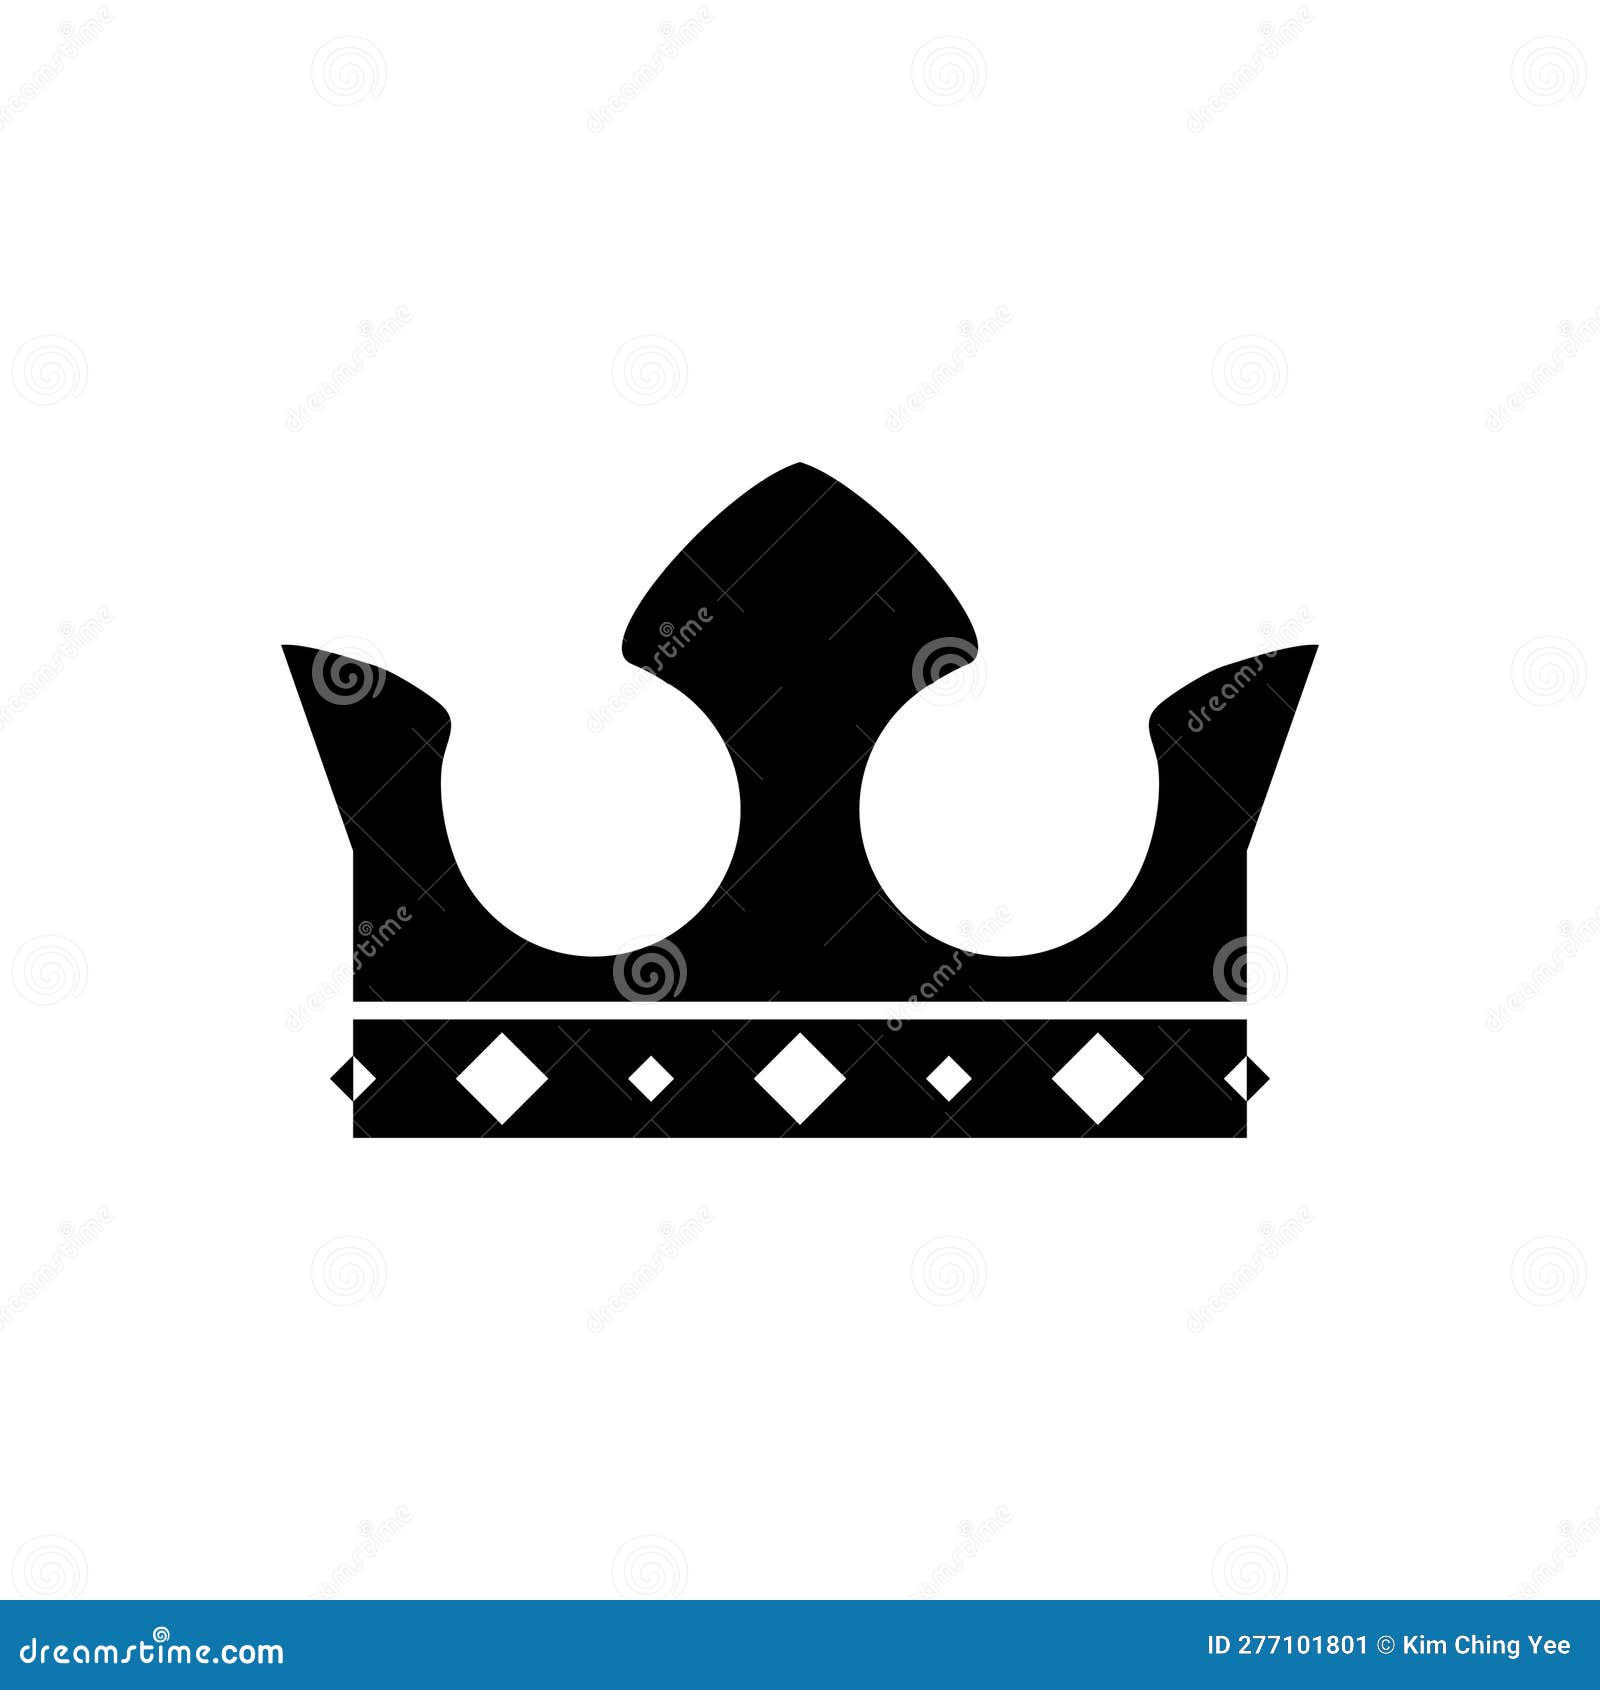 Corona Del Rey Vectores, Iconos, Gráficos y Fondos para Descargar